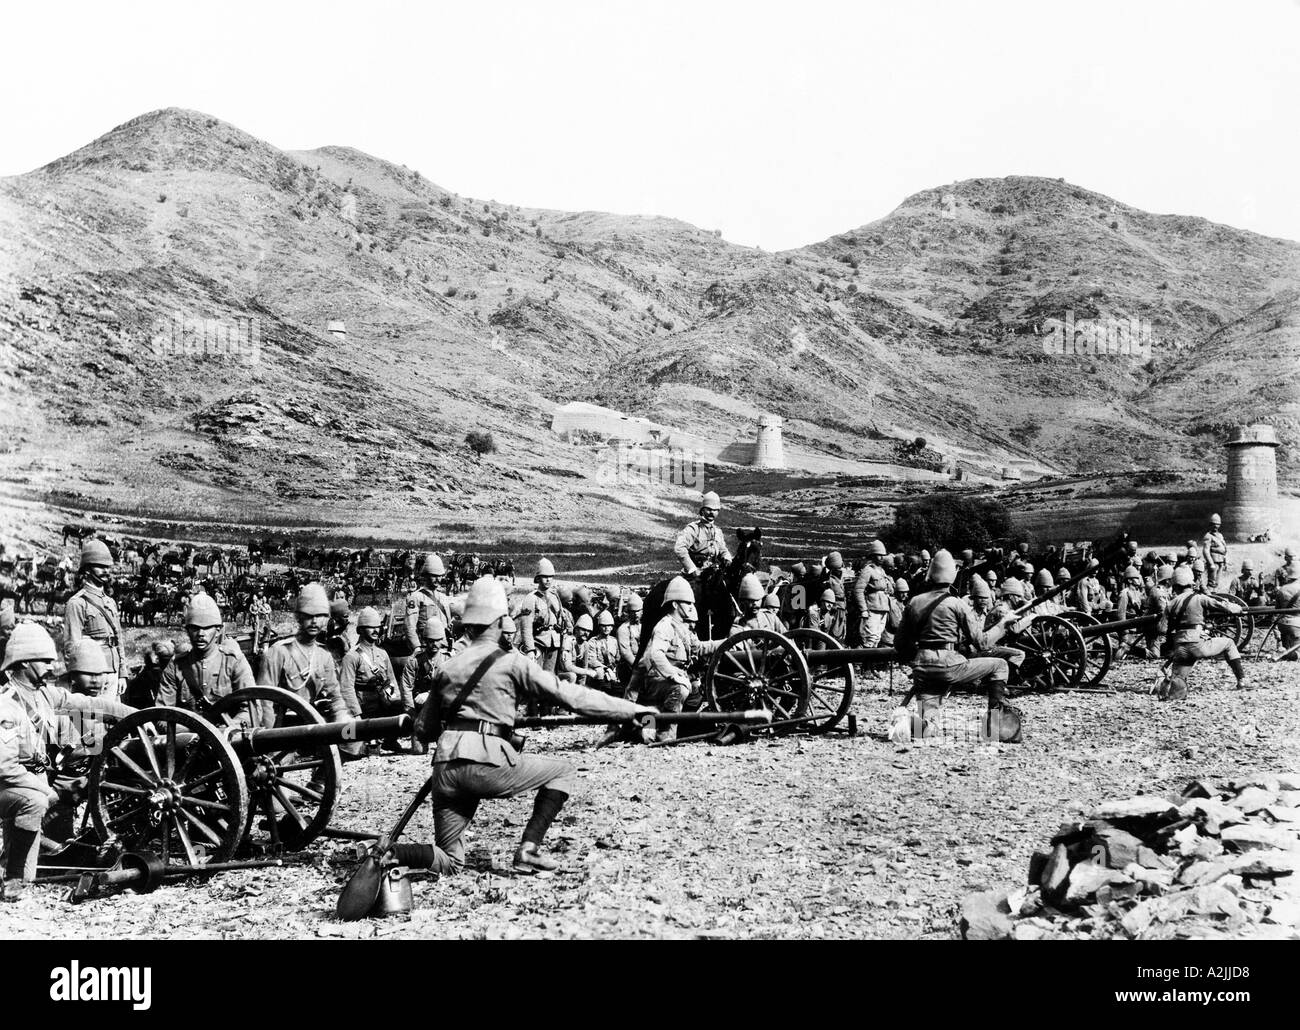 Britische Armee Artillerie vor einer Wallburg im indischen Punjab ca. 1890 Hinweis Kavallerie im Bild links Stockfoto